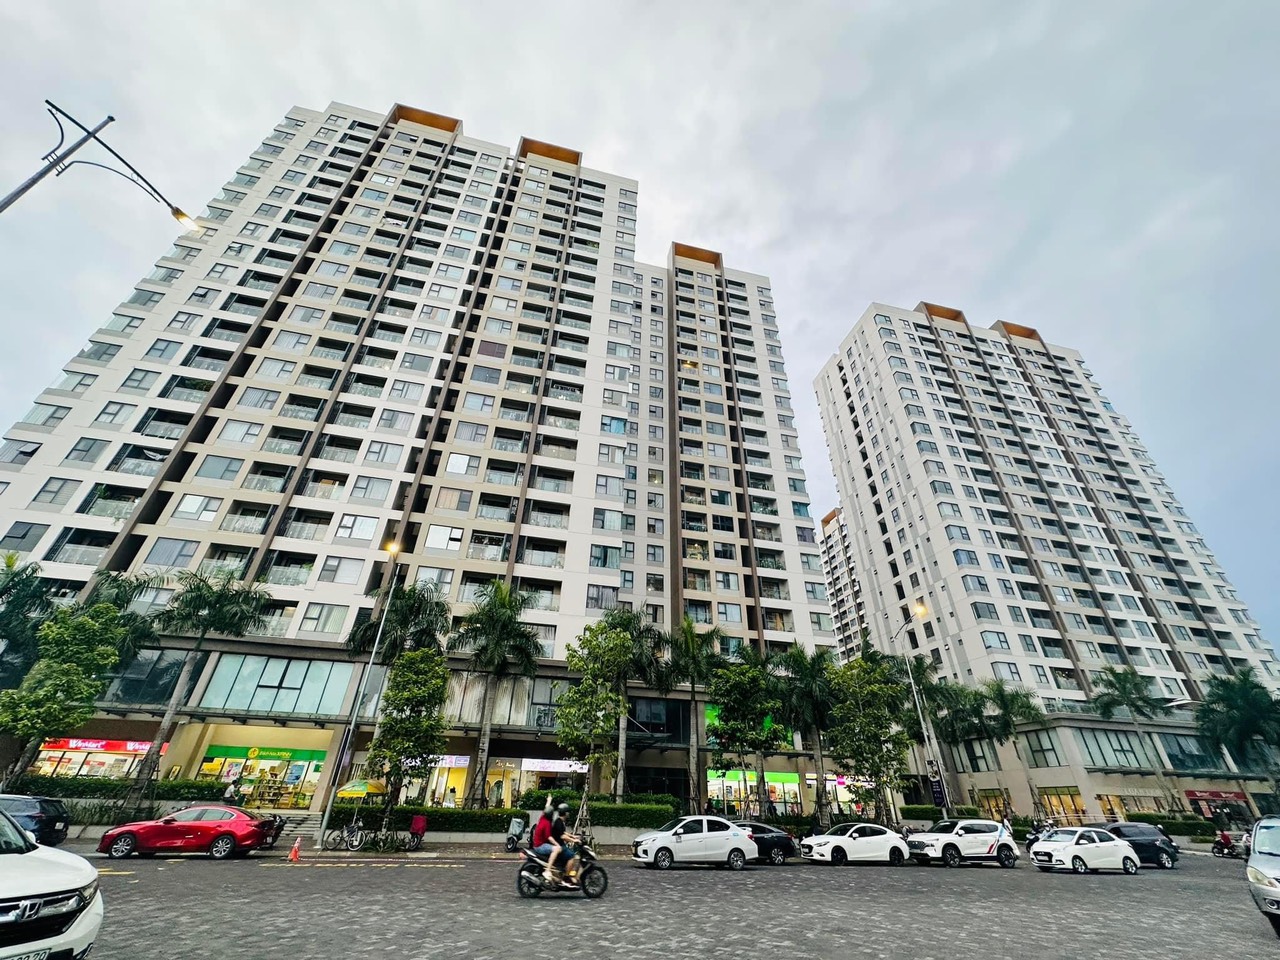 Mở bán 14 căn shophouse tại căn hộ Akari, Bình Tân. Hơn 2000 cư dân đã hiện hữu giá thuê shophouse từ 70tr.